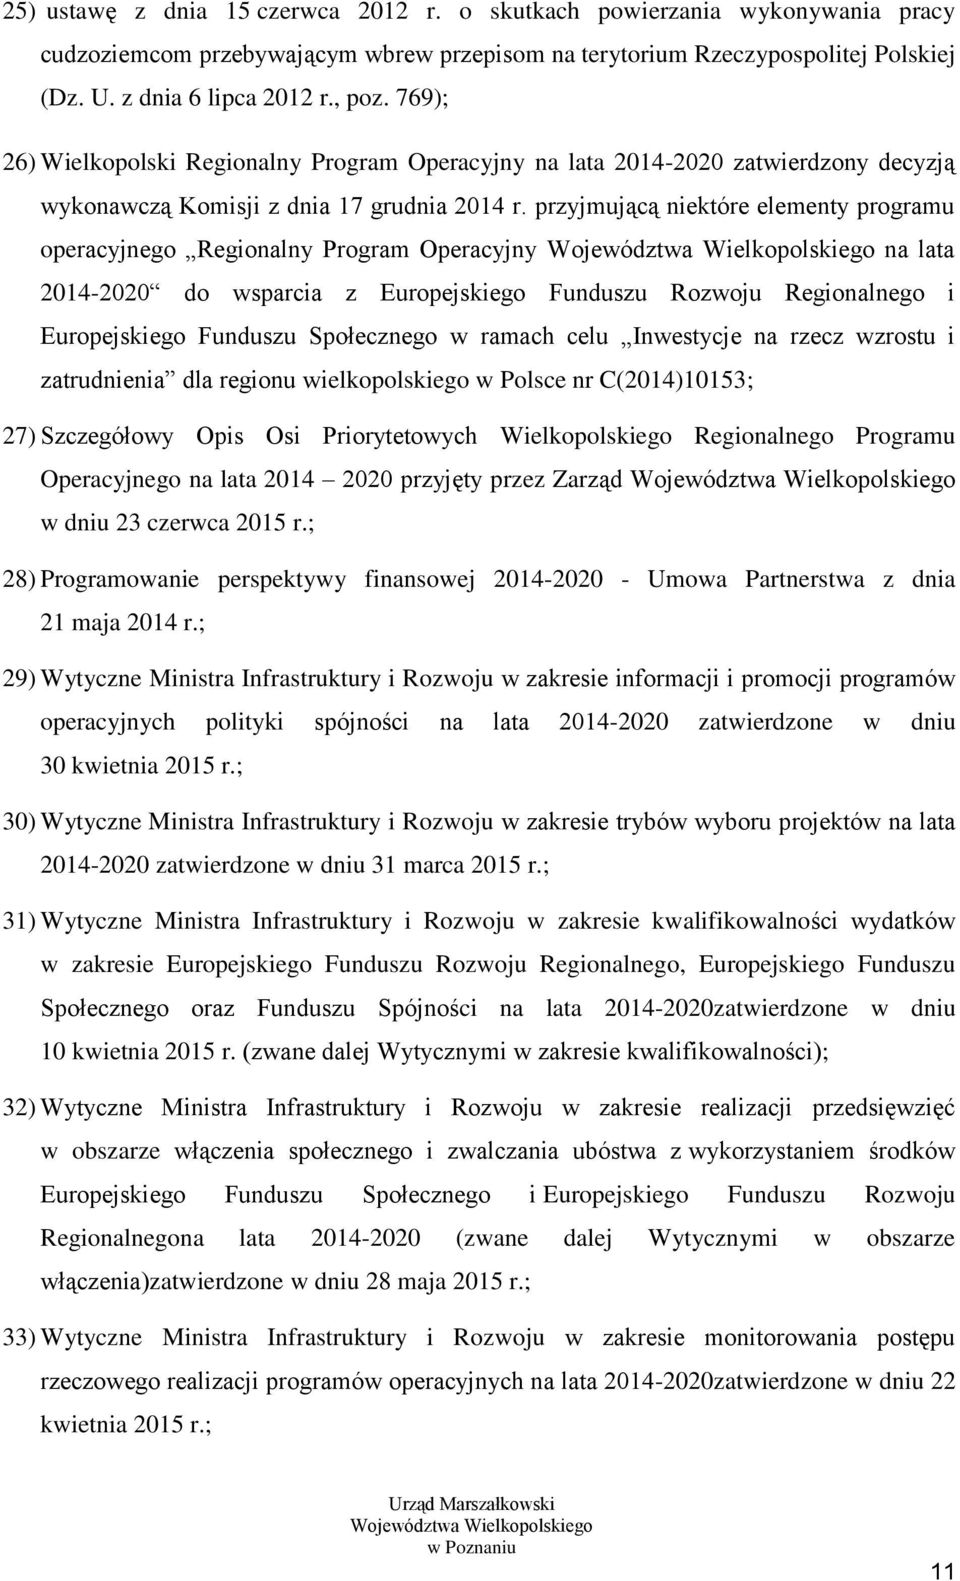 przyjmującą niektóre elementy programu operacyjnego Regionalny Program Operacyjny Województwa Wielkopolskiego na lata 2014-2020 do wsparcia z Europejskiego Funduszu Rozwoju Regionalnego i